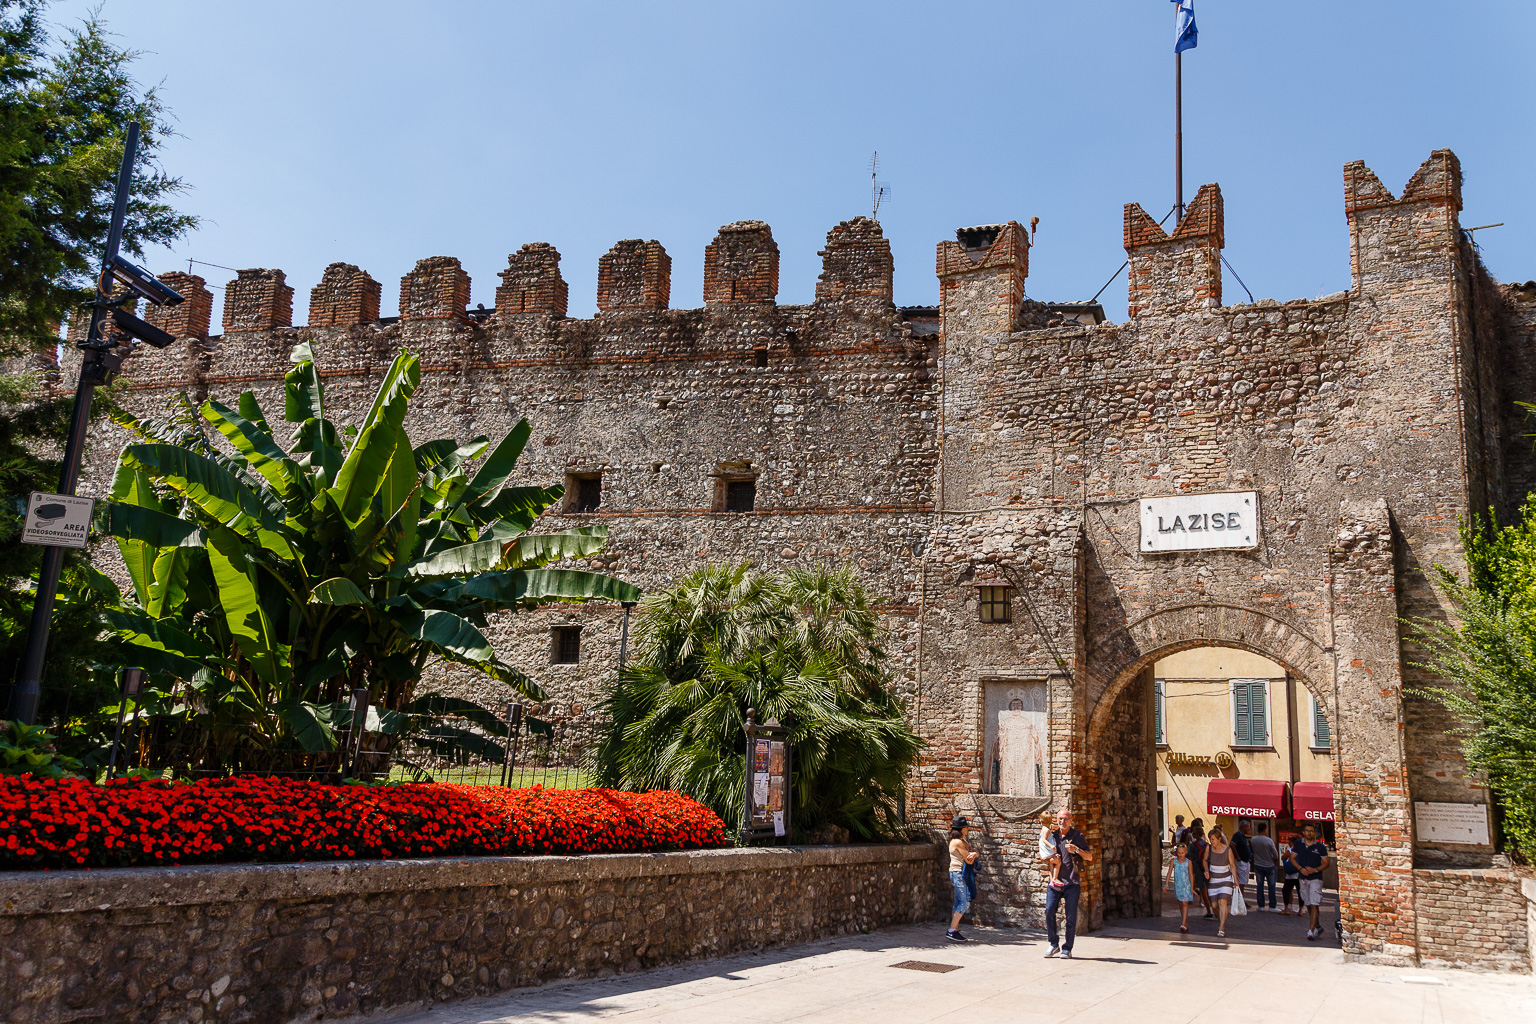 Stadtmauer mit Tor  Lazise Veneto Italien by Peter Ehlert in Lazise am Gardasee